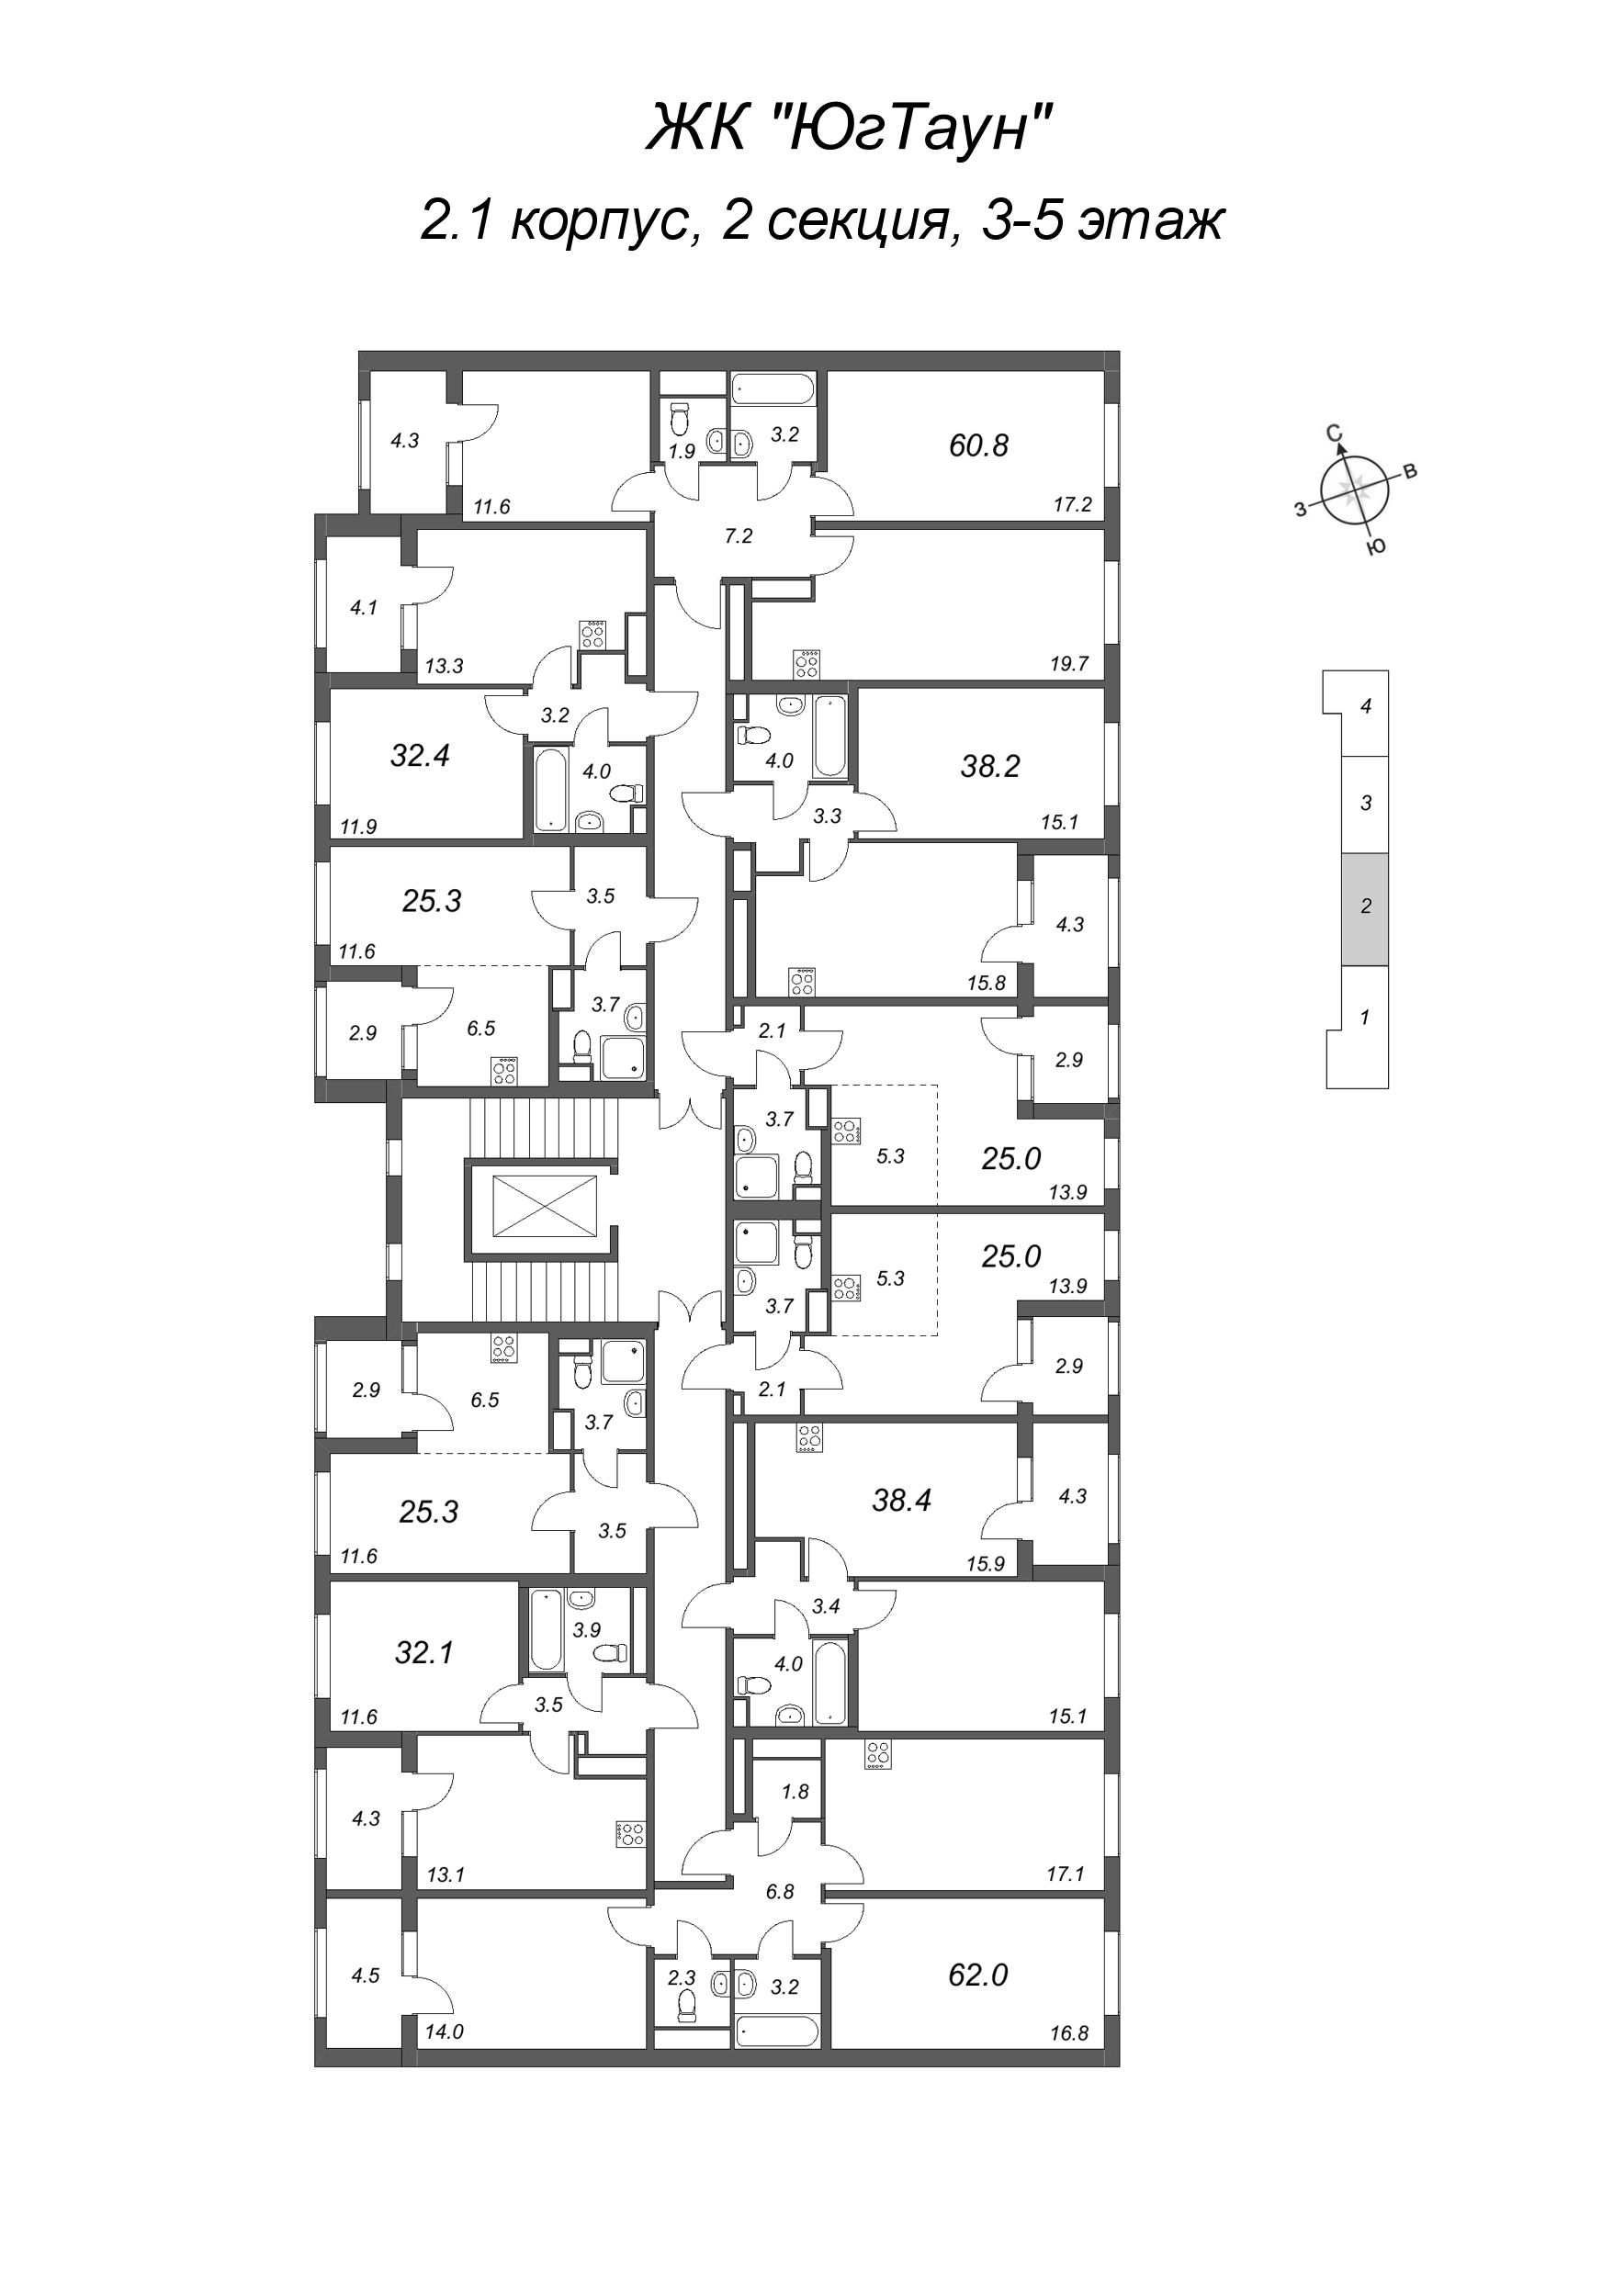 1-комнатная квартира, 32.4 м² в ЖК "ЮгТаун" - планировка этажа